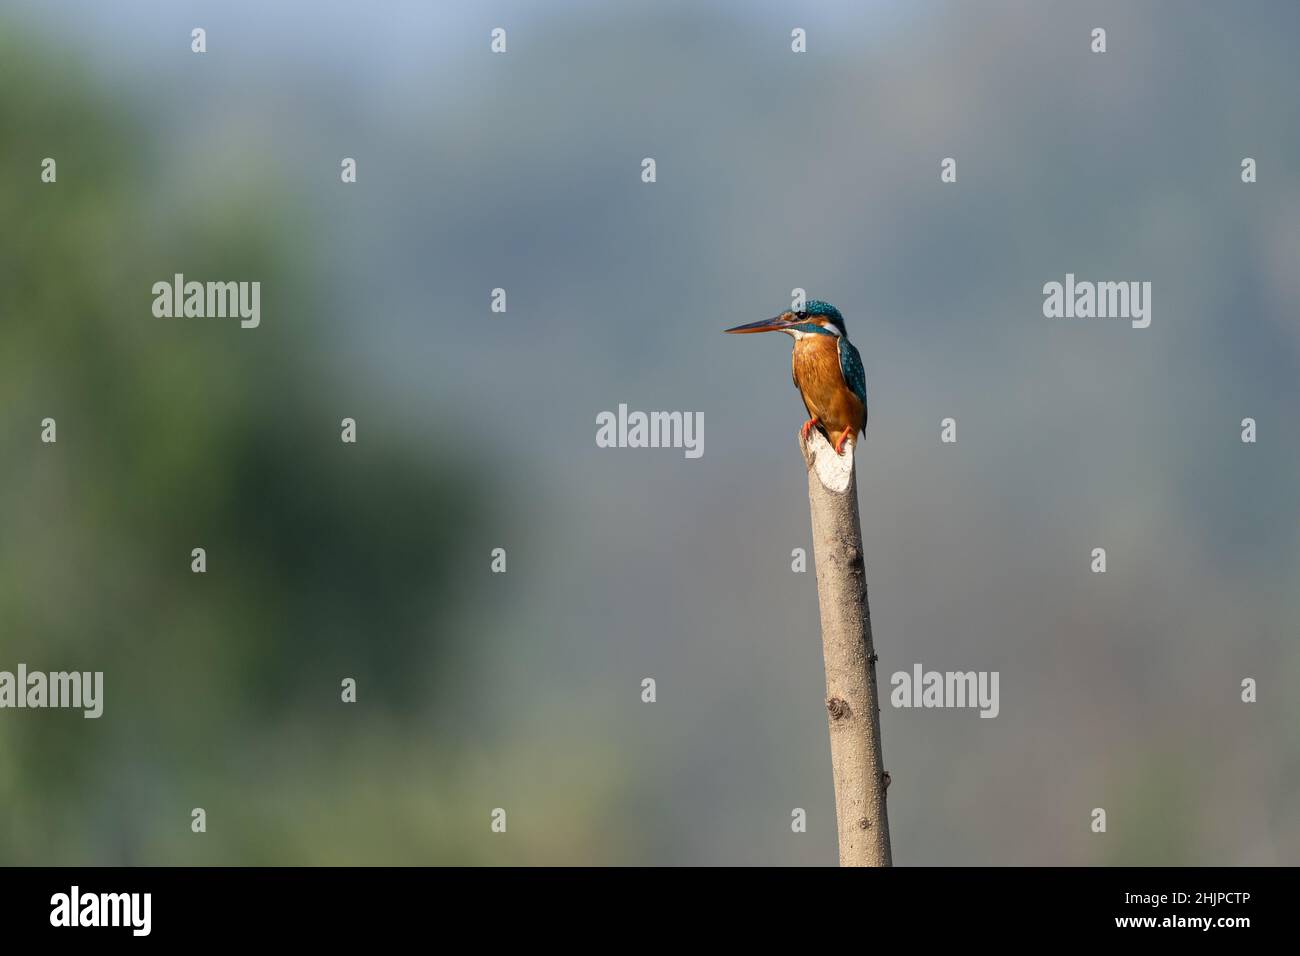 kingfisher commun perché sur une bûche en bois Banque D'Images